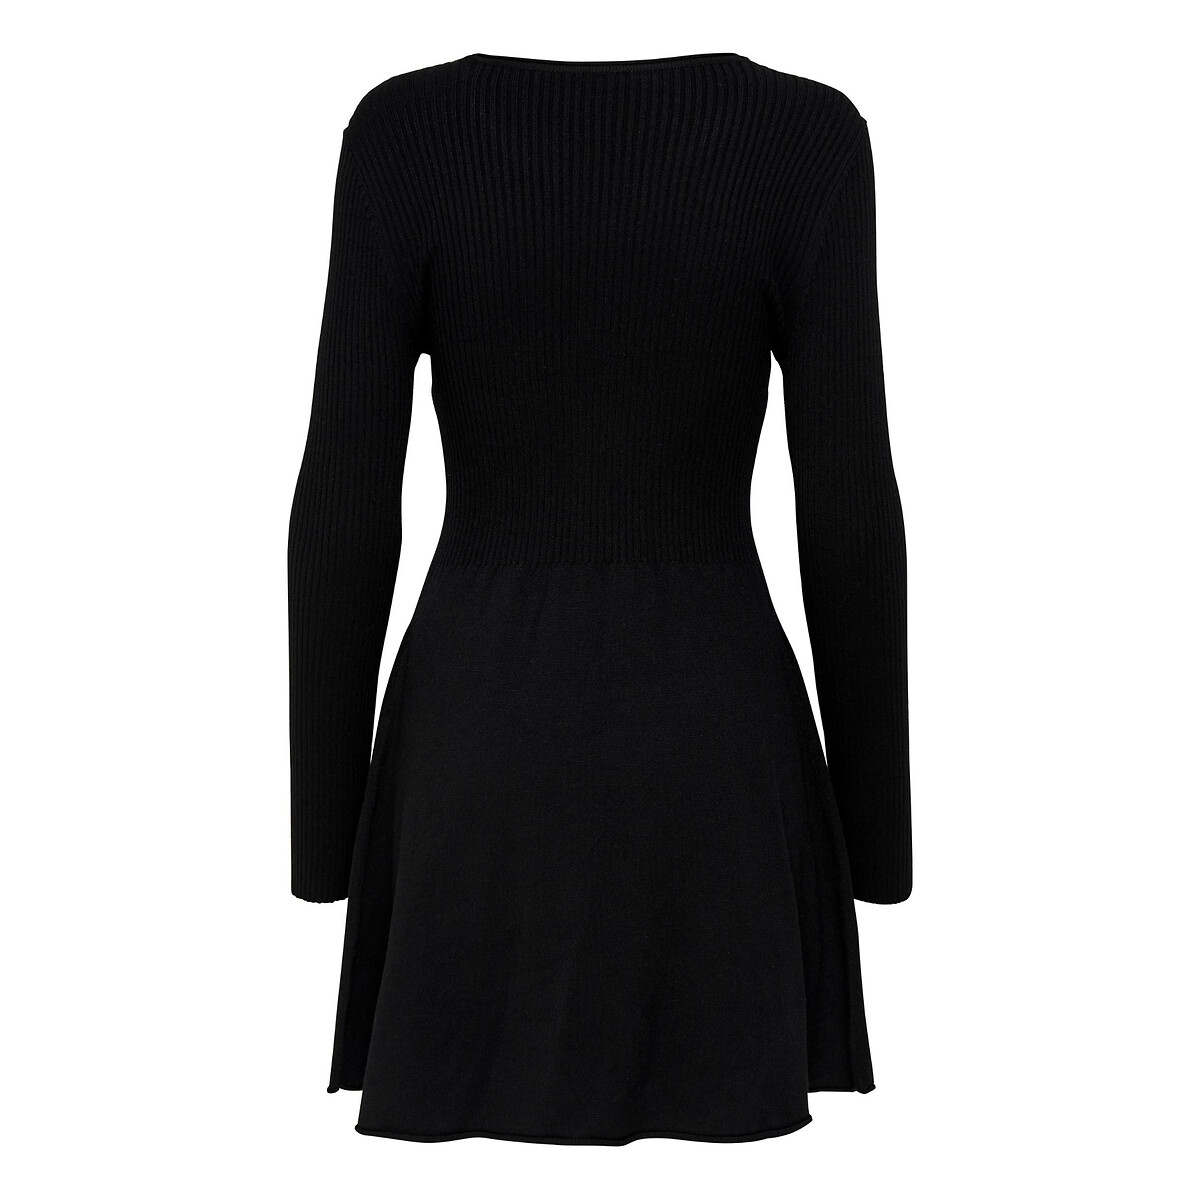 Платье короткое расклешенное с длинными рукавами M черный платье короткое расклешенное с короткими рукавами 2 m черный